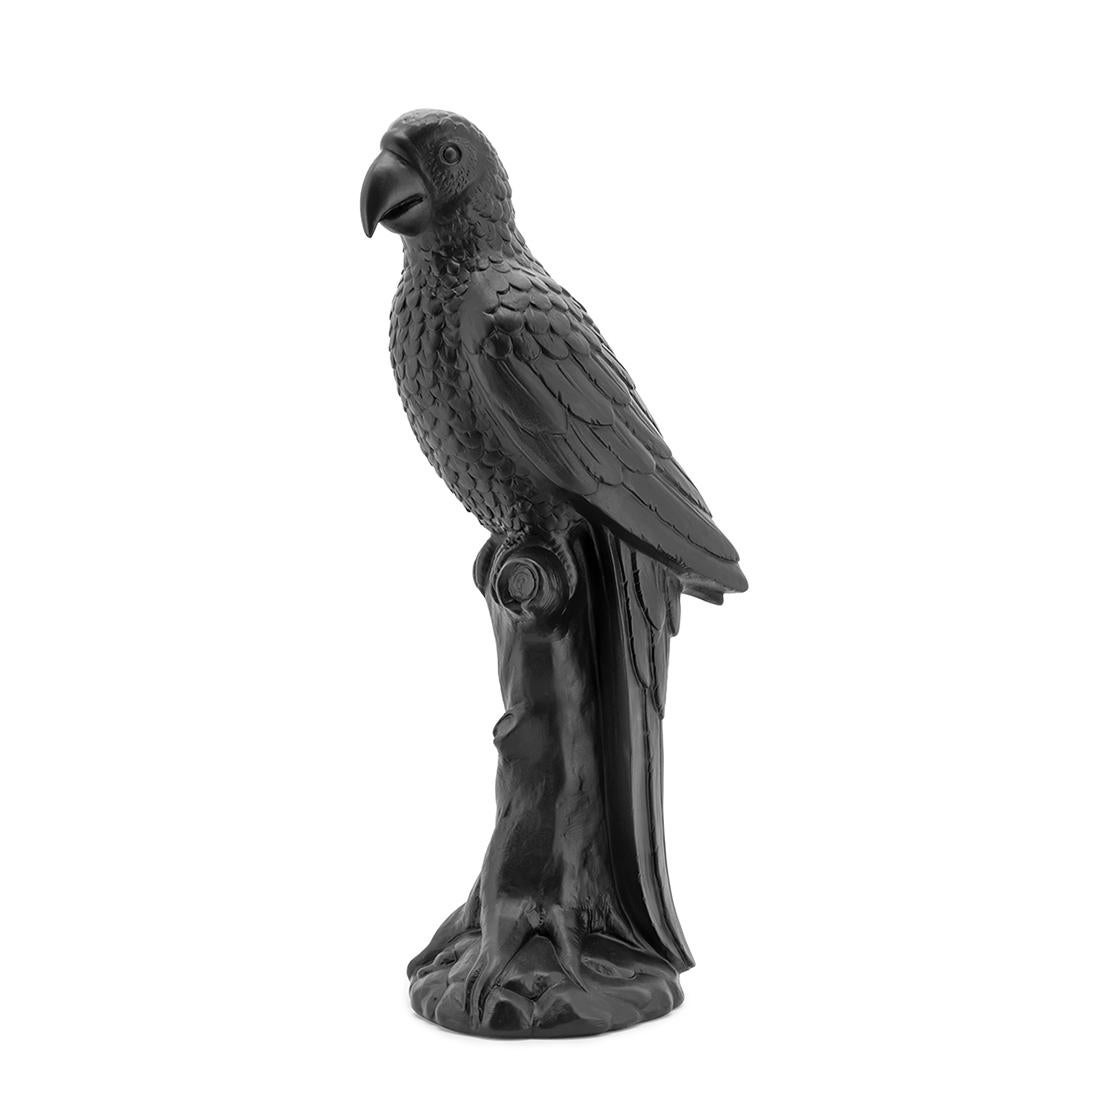 Skulptur schwarzer Papagei in Keramik 
in schwarzer Ausführung.
Auch in weißer Ausführung erhältlich.